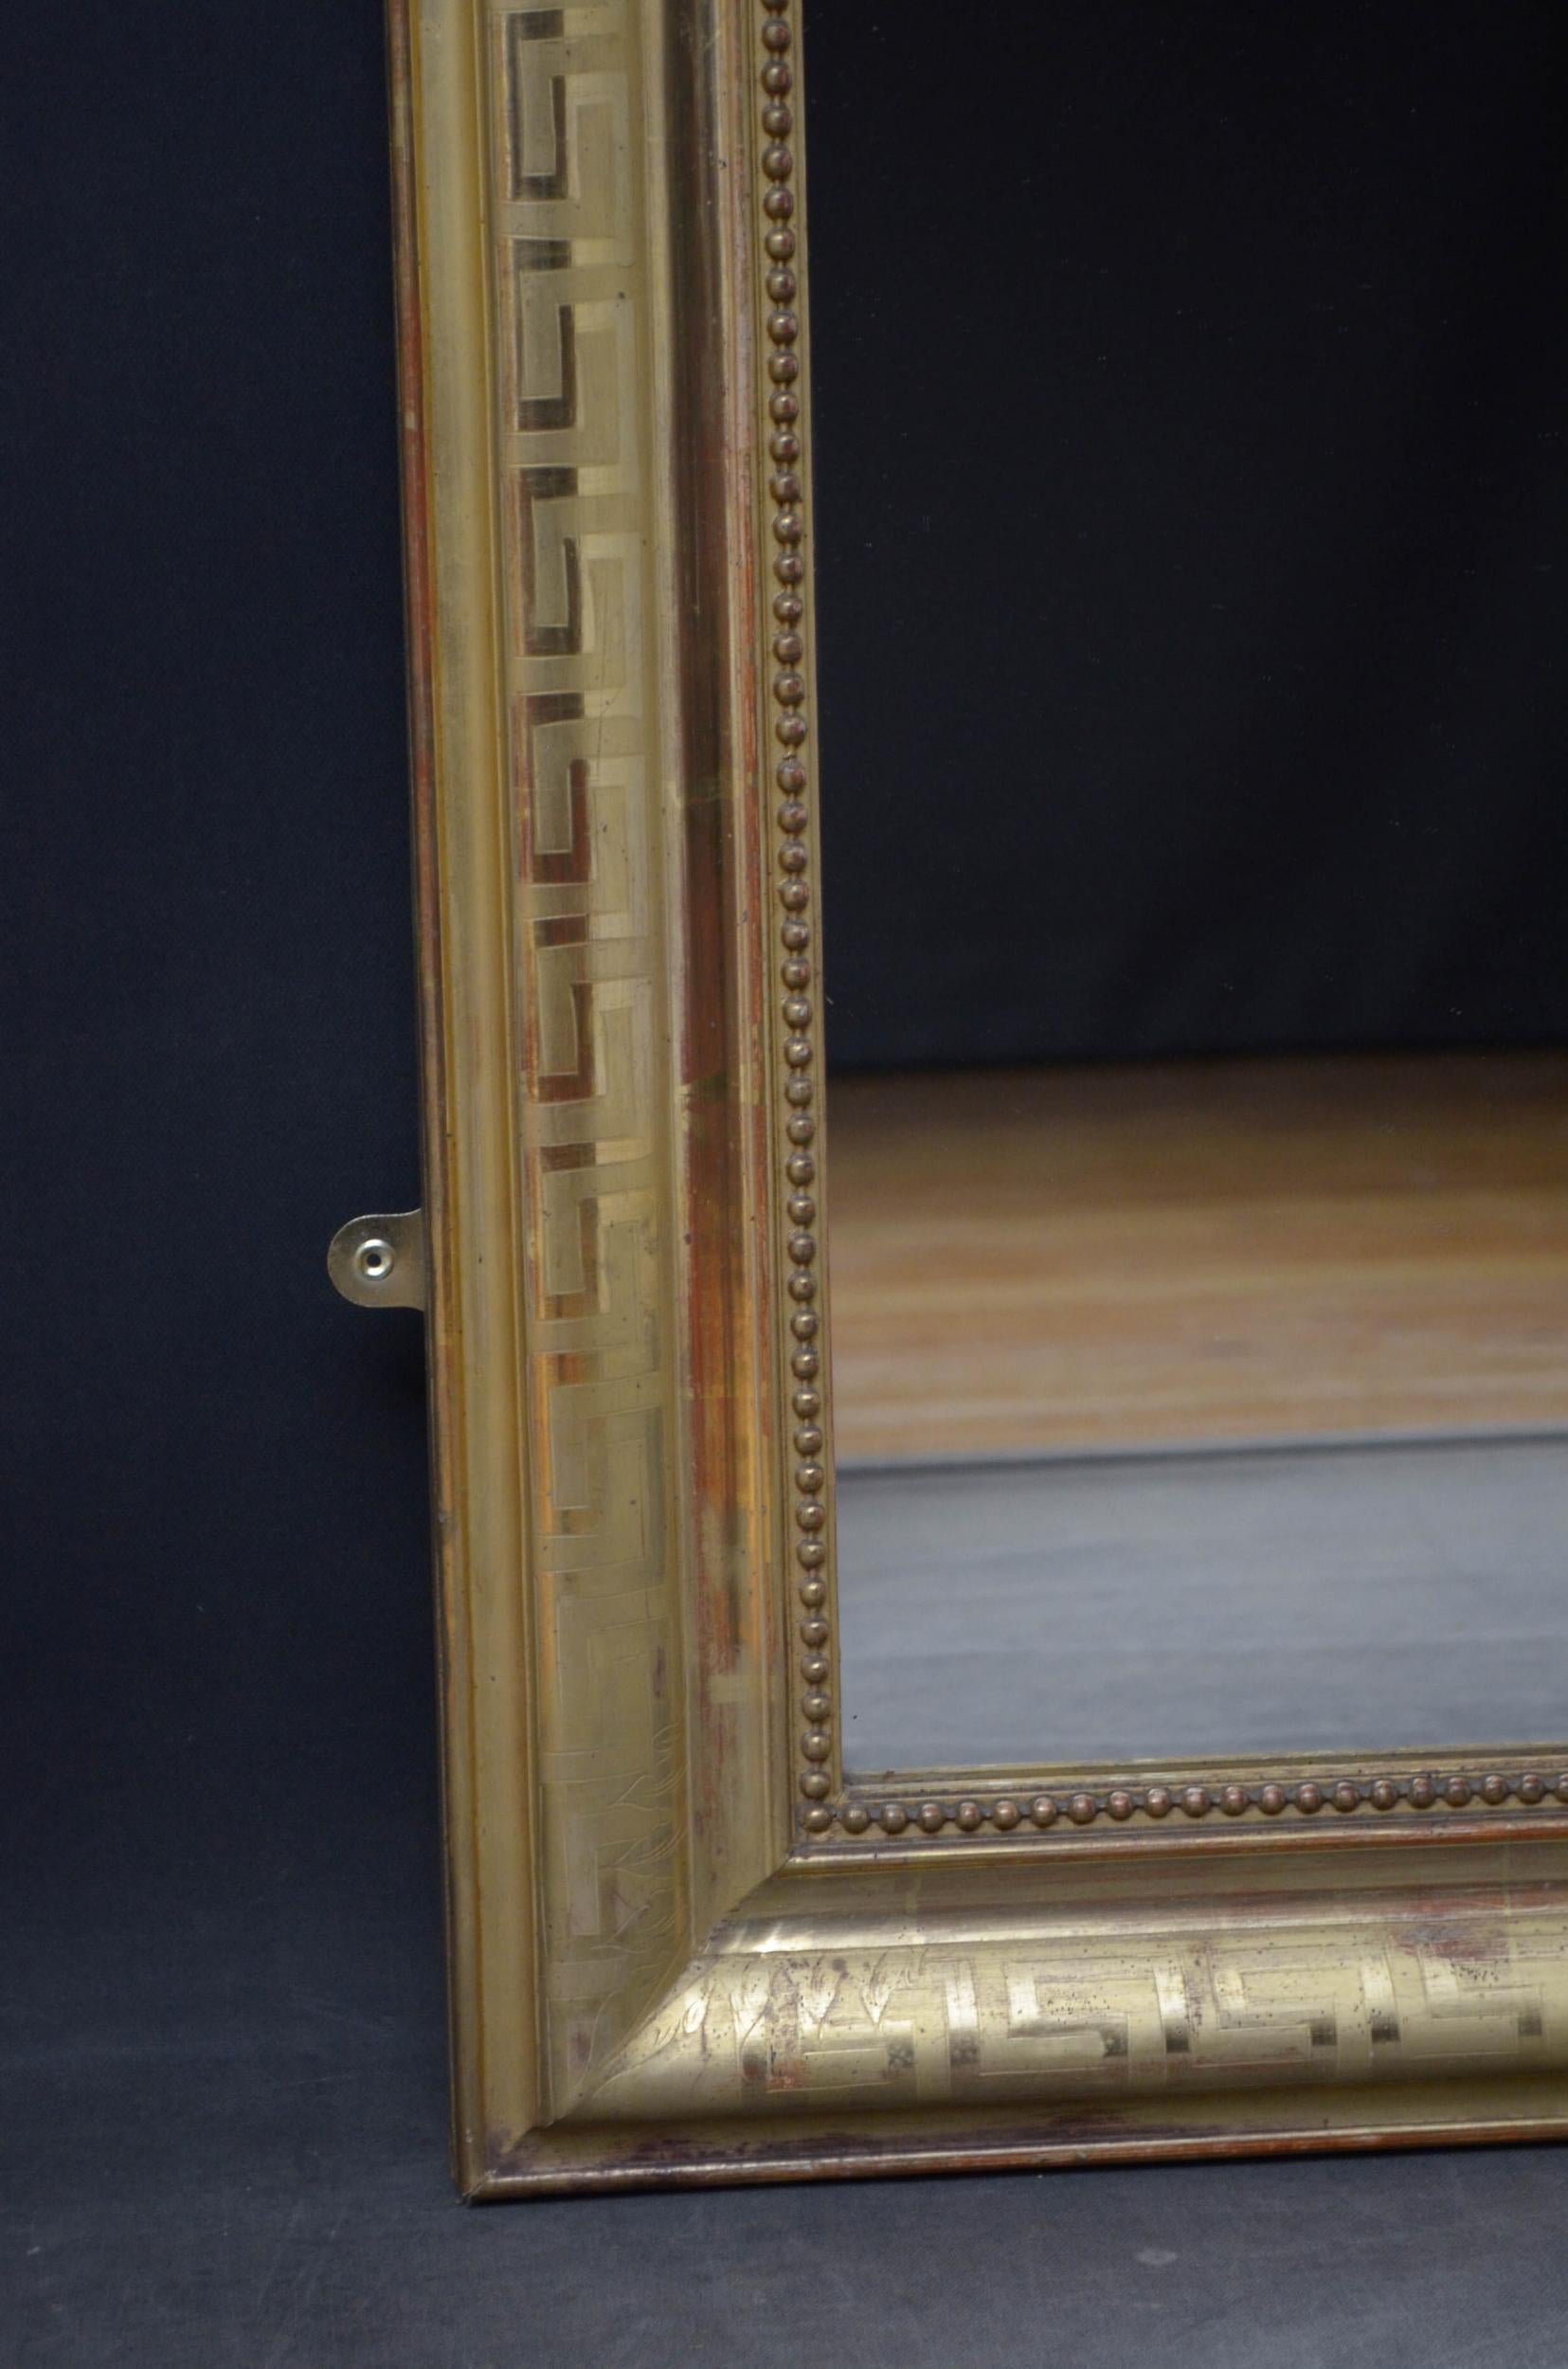 Sn4870 großartiger französischer vergoldeter Wandspiegel mit Ersatzglas in vergoldetem Rahmen mit griechischem Schlüsseldekor und fabelhaftem Muschelkamm mit Schriftrollen und Blumen in der Mitte. Dieser antike Spiegel bewahrt seine ursprüngliche